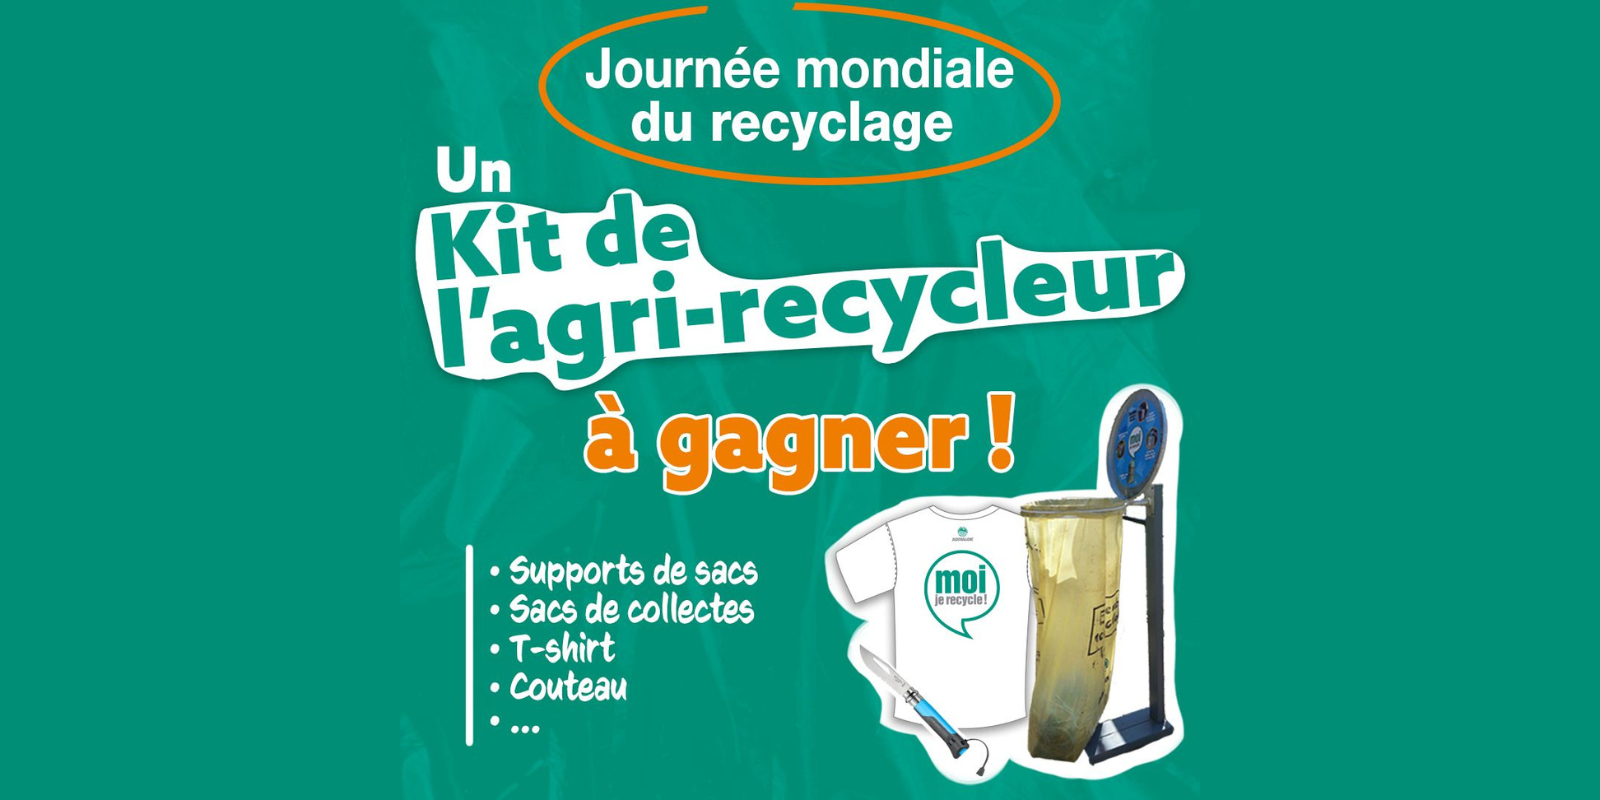 Journée mondiale du recyclage :  A.D.I.VALOR organise un jeu concours spécial tri sur ses réseaux sociaux